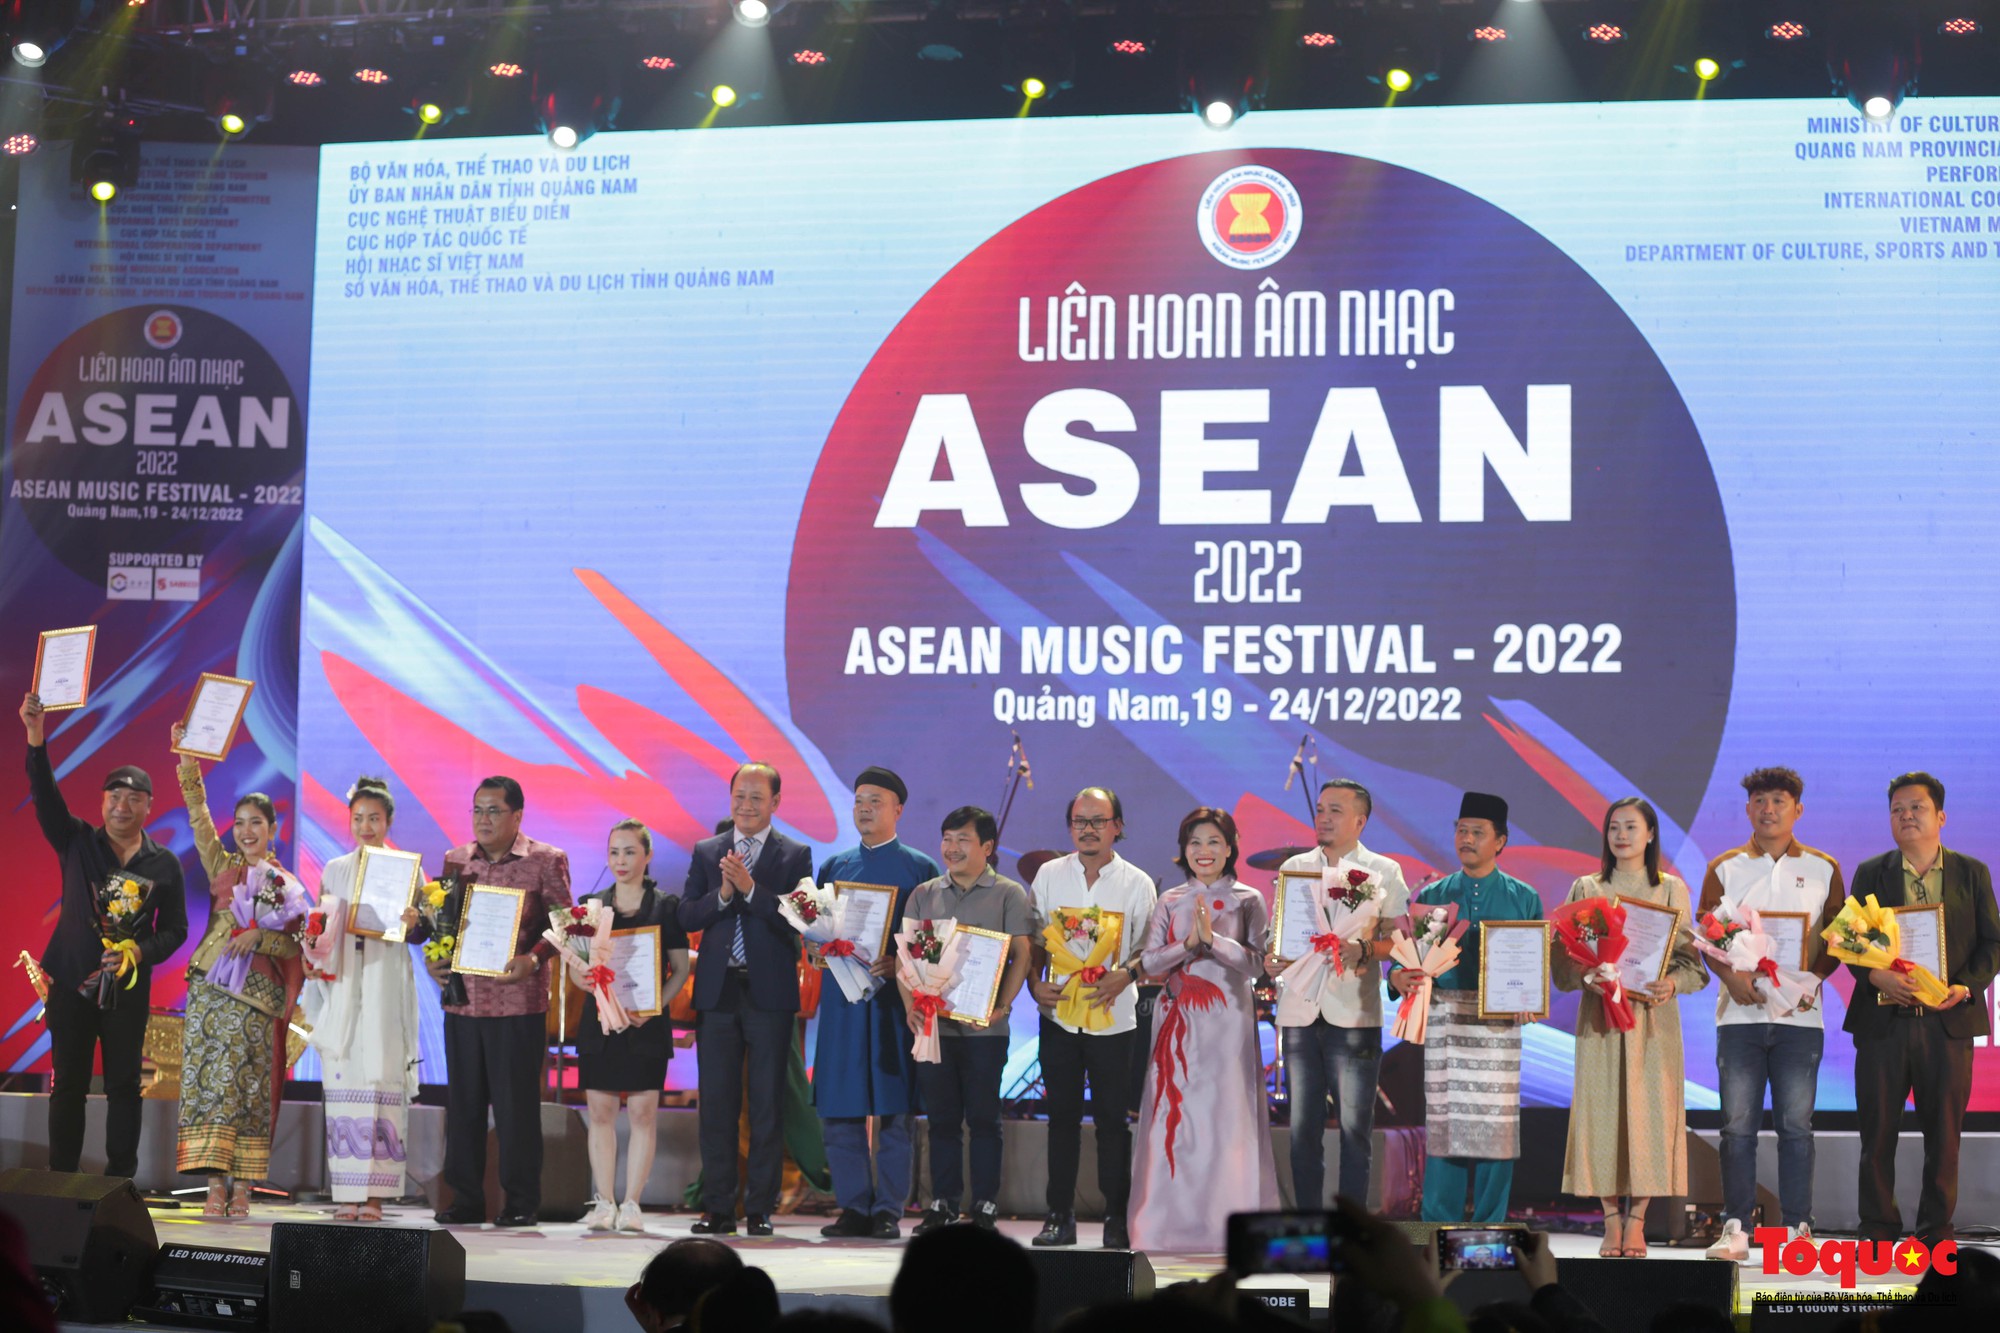 Liên hoan Âm nhạc ASEAN - 2022: Thắt chặt thêm tình hữu nghị, đoàn kết và hợp tác toàn diện - Ảnh 3.